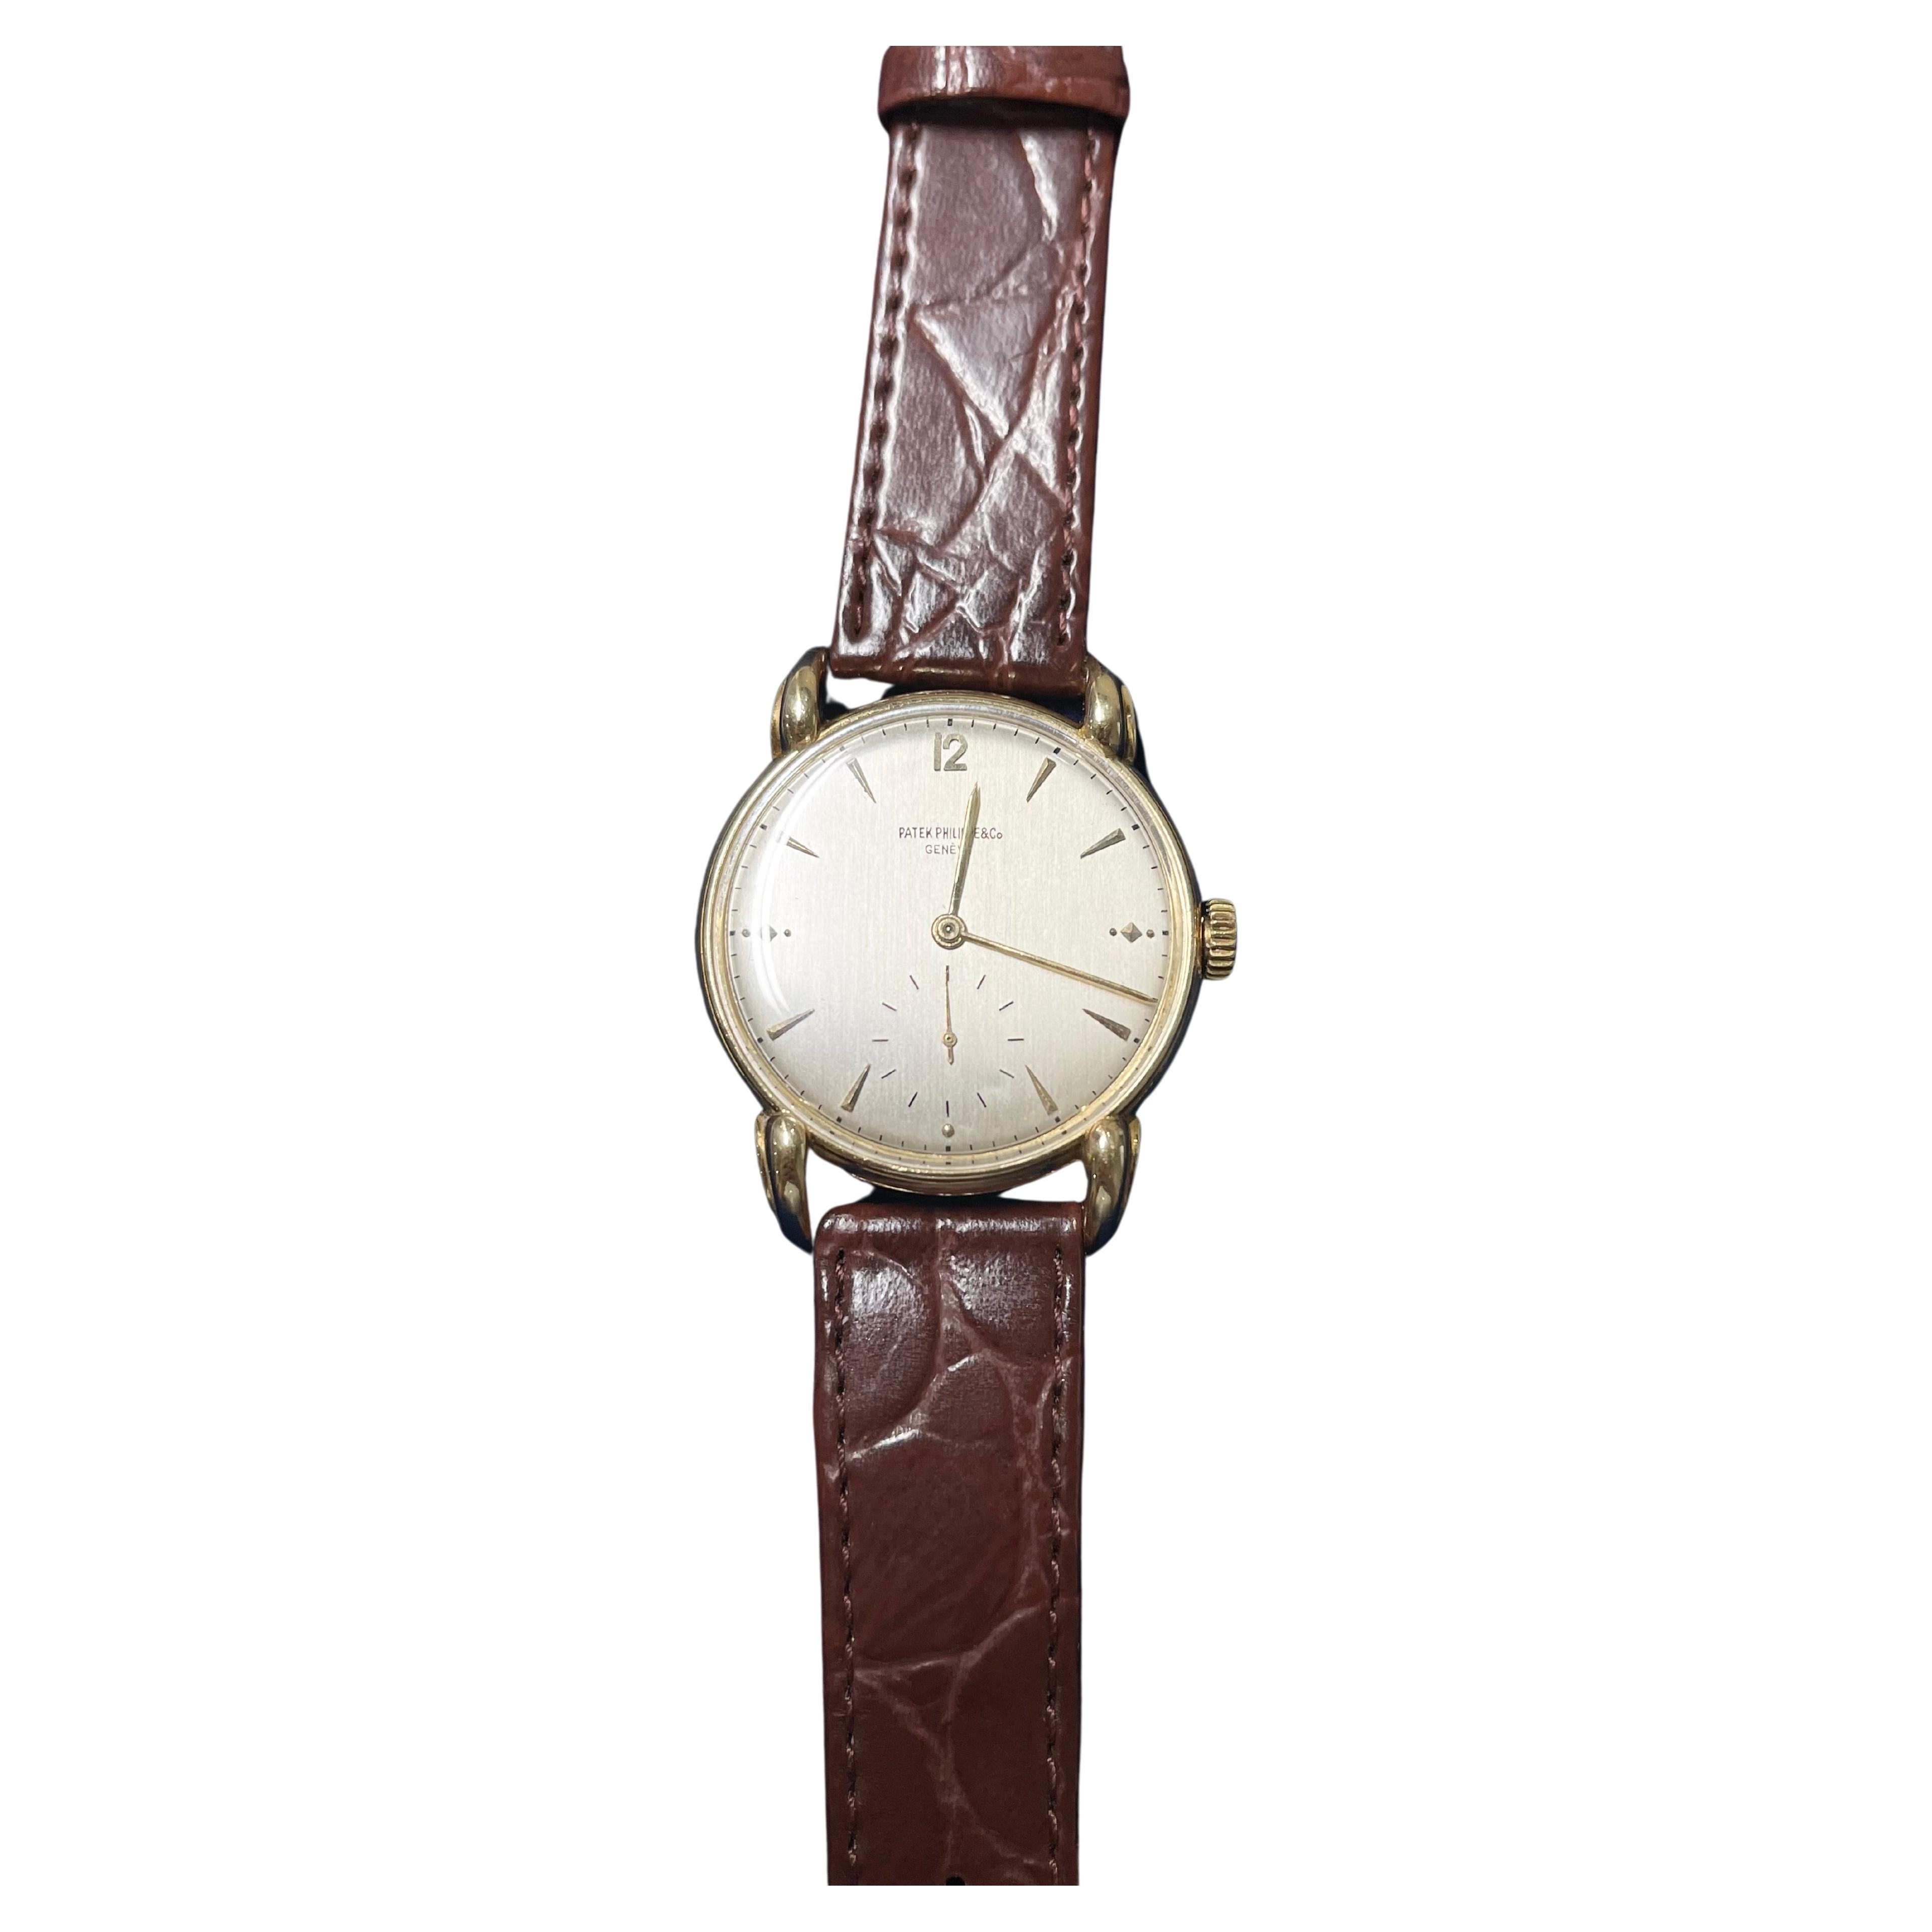 Patek Philippe Handgeschriebene Vintage-Uhr Ref. 1590 18k YG .750